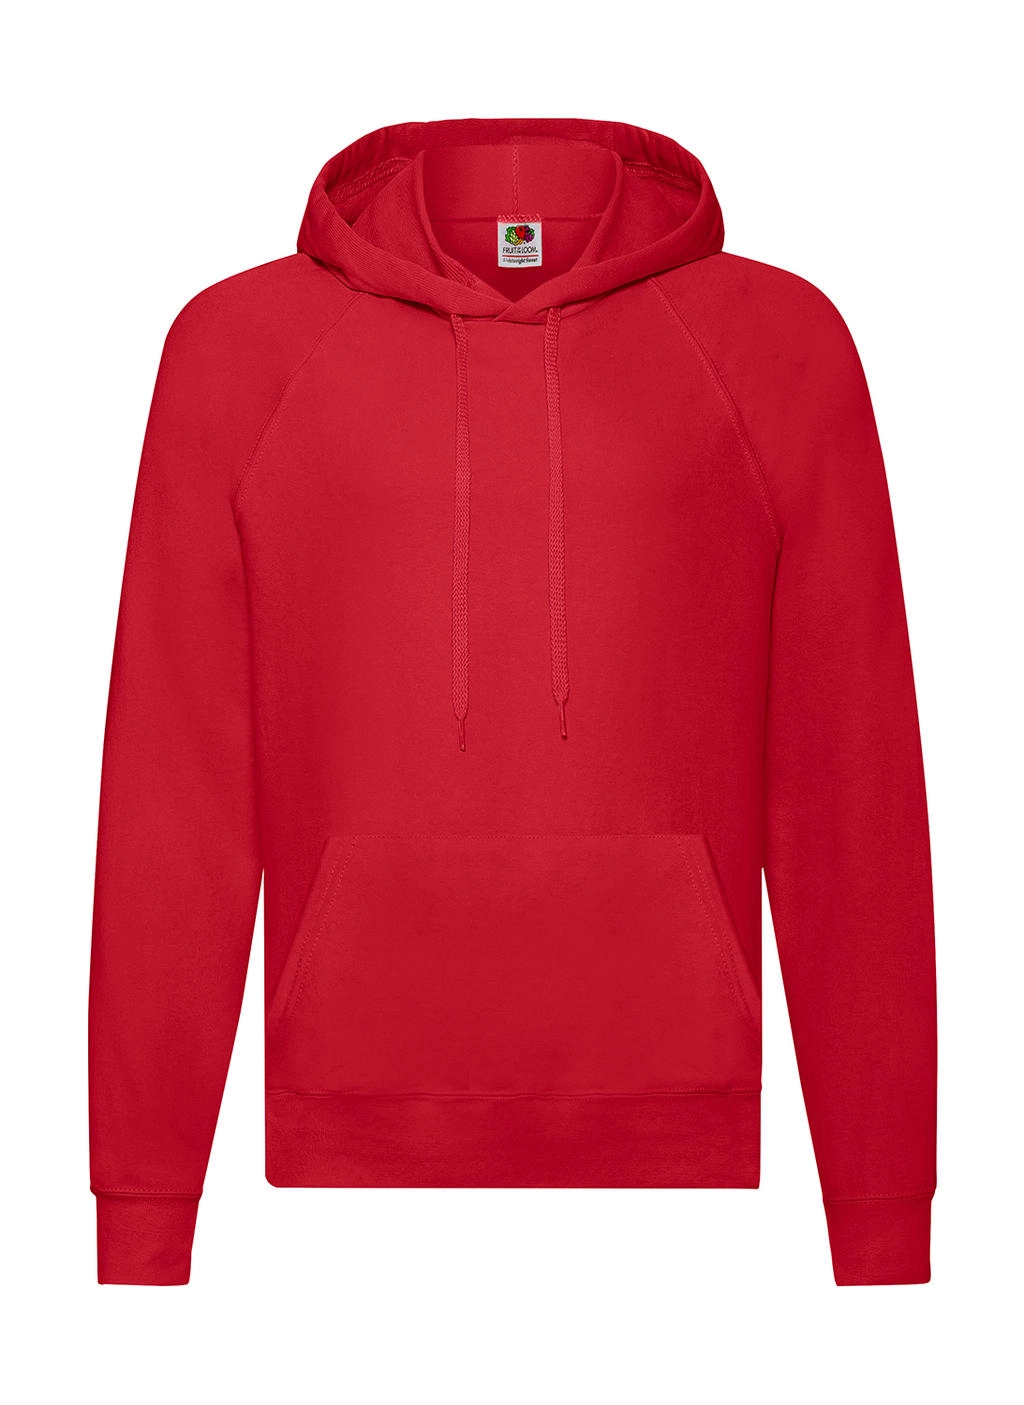 Lightweight Hooded Sweat zum Besticken und Bedrucken in der Farbe Red mit Ihren Logo, Schriftzug oder Motiv.